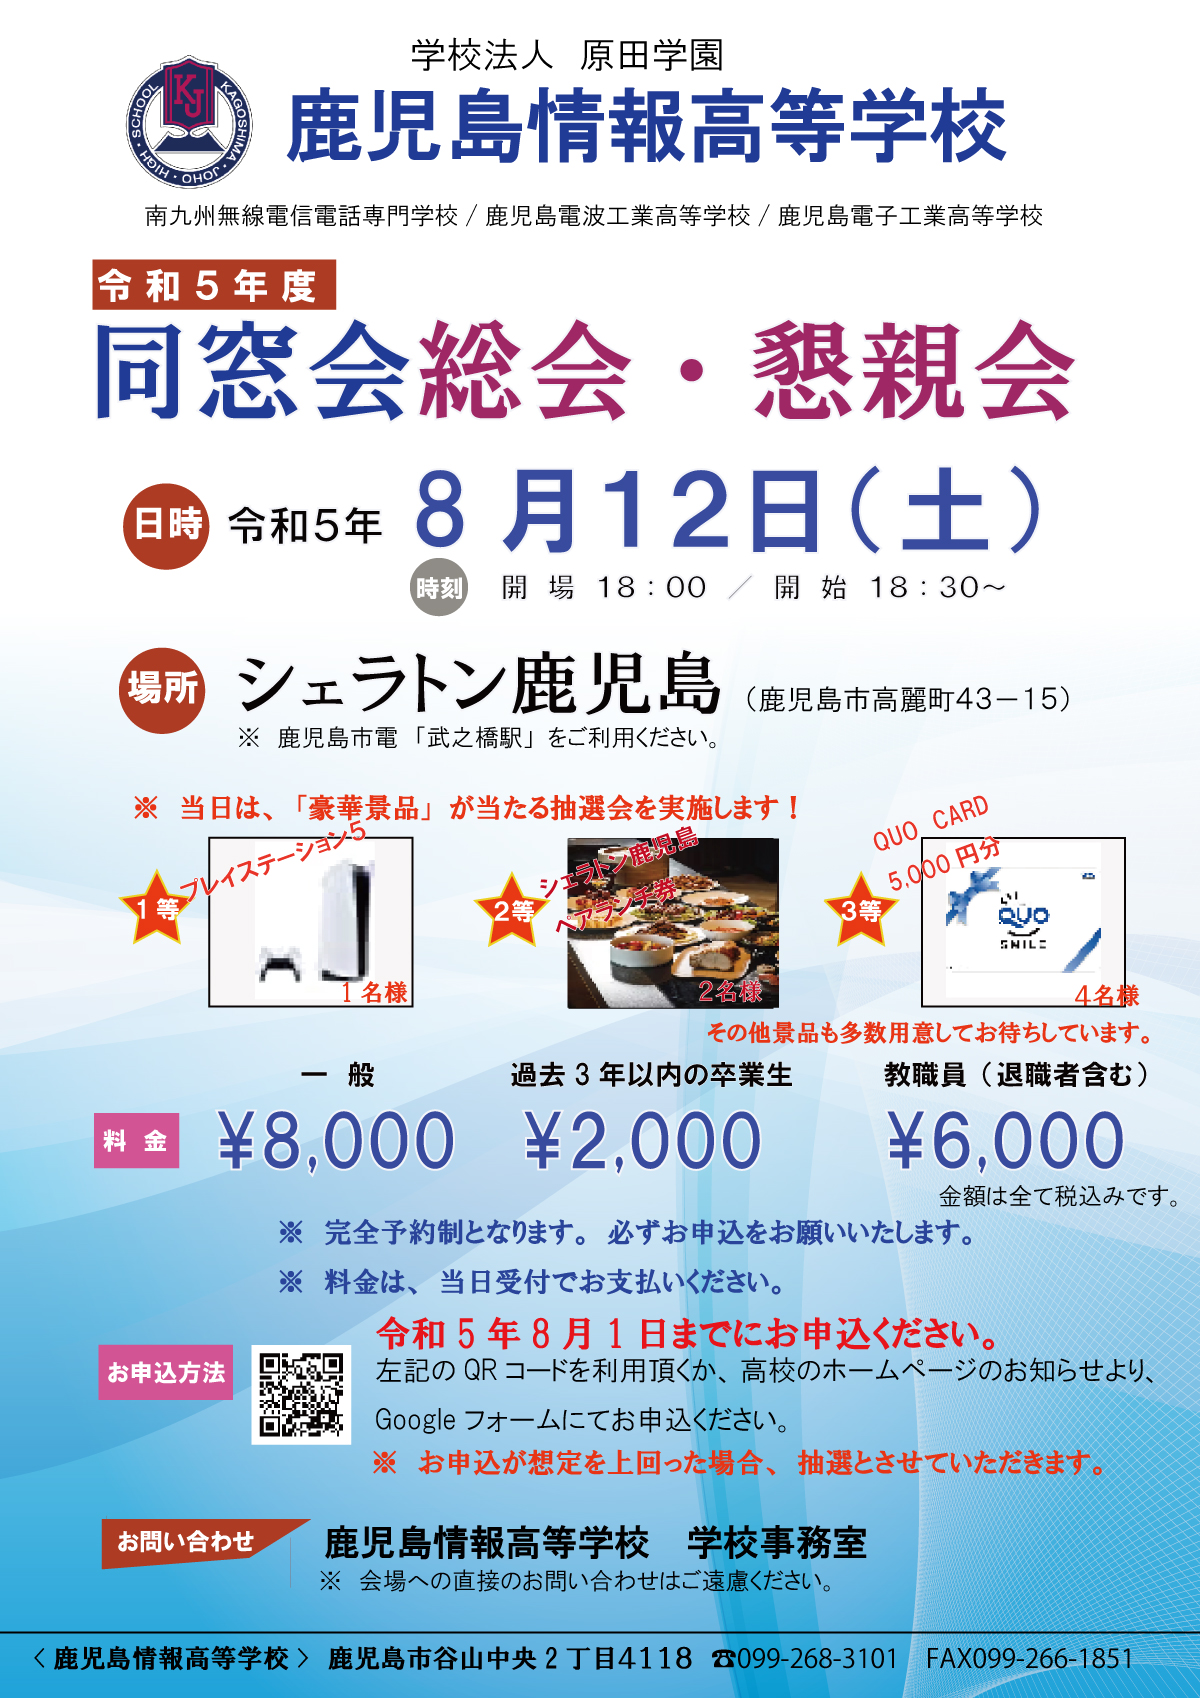 https://ka-joho.jp/info/images/R5%E5%90%8C%E7%AA%93%E4%BC%9A.jpg